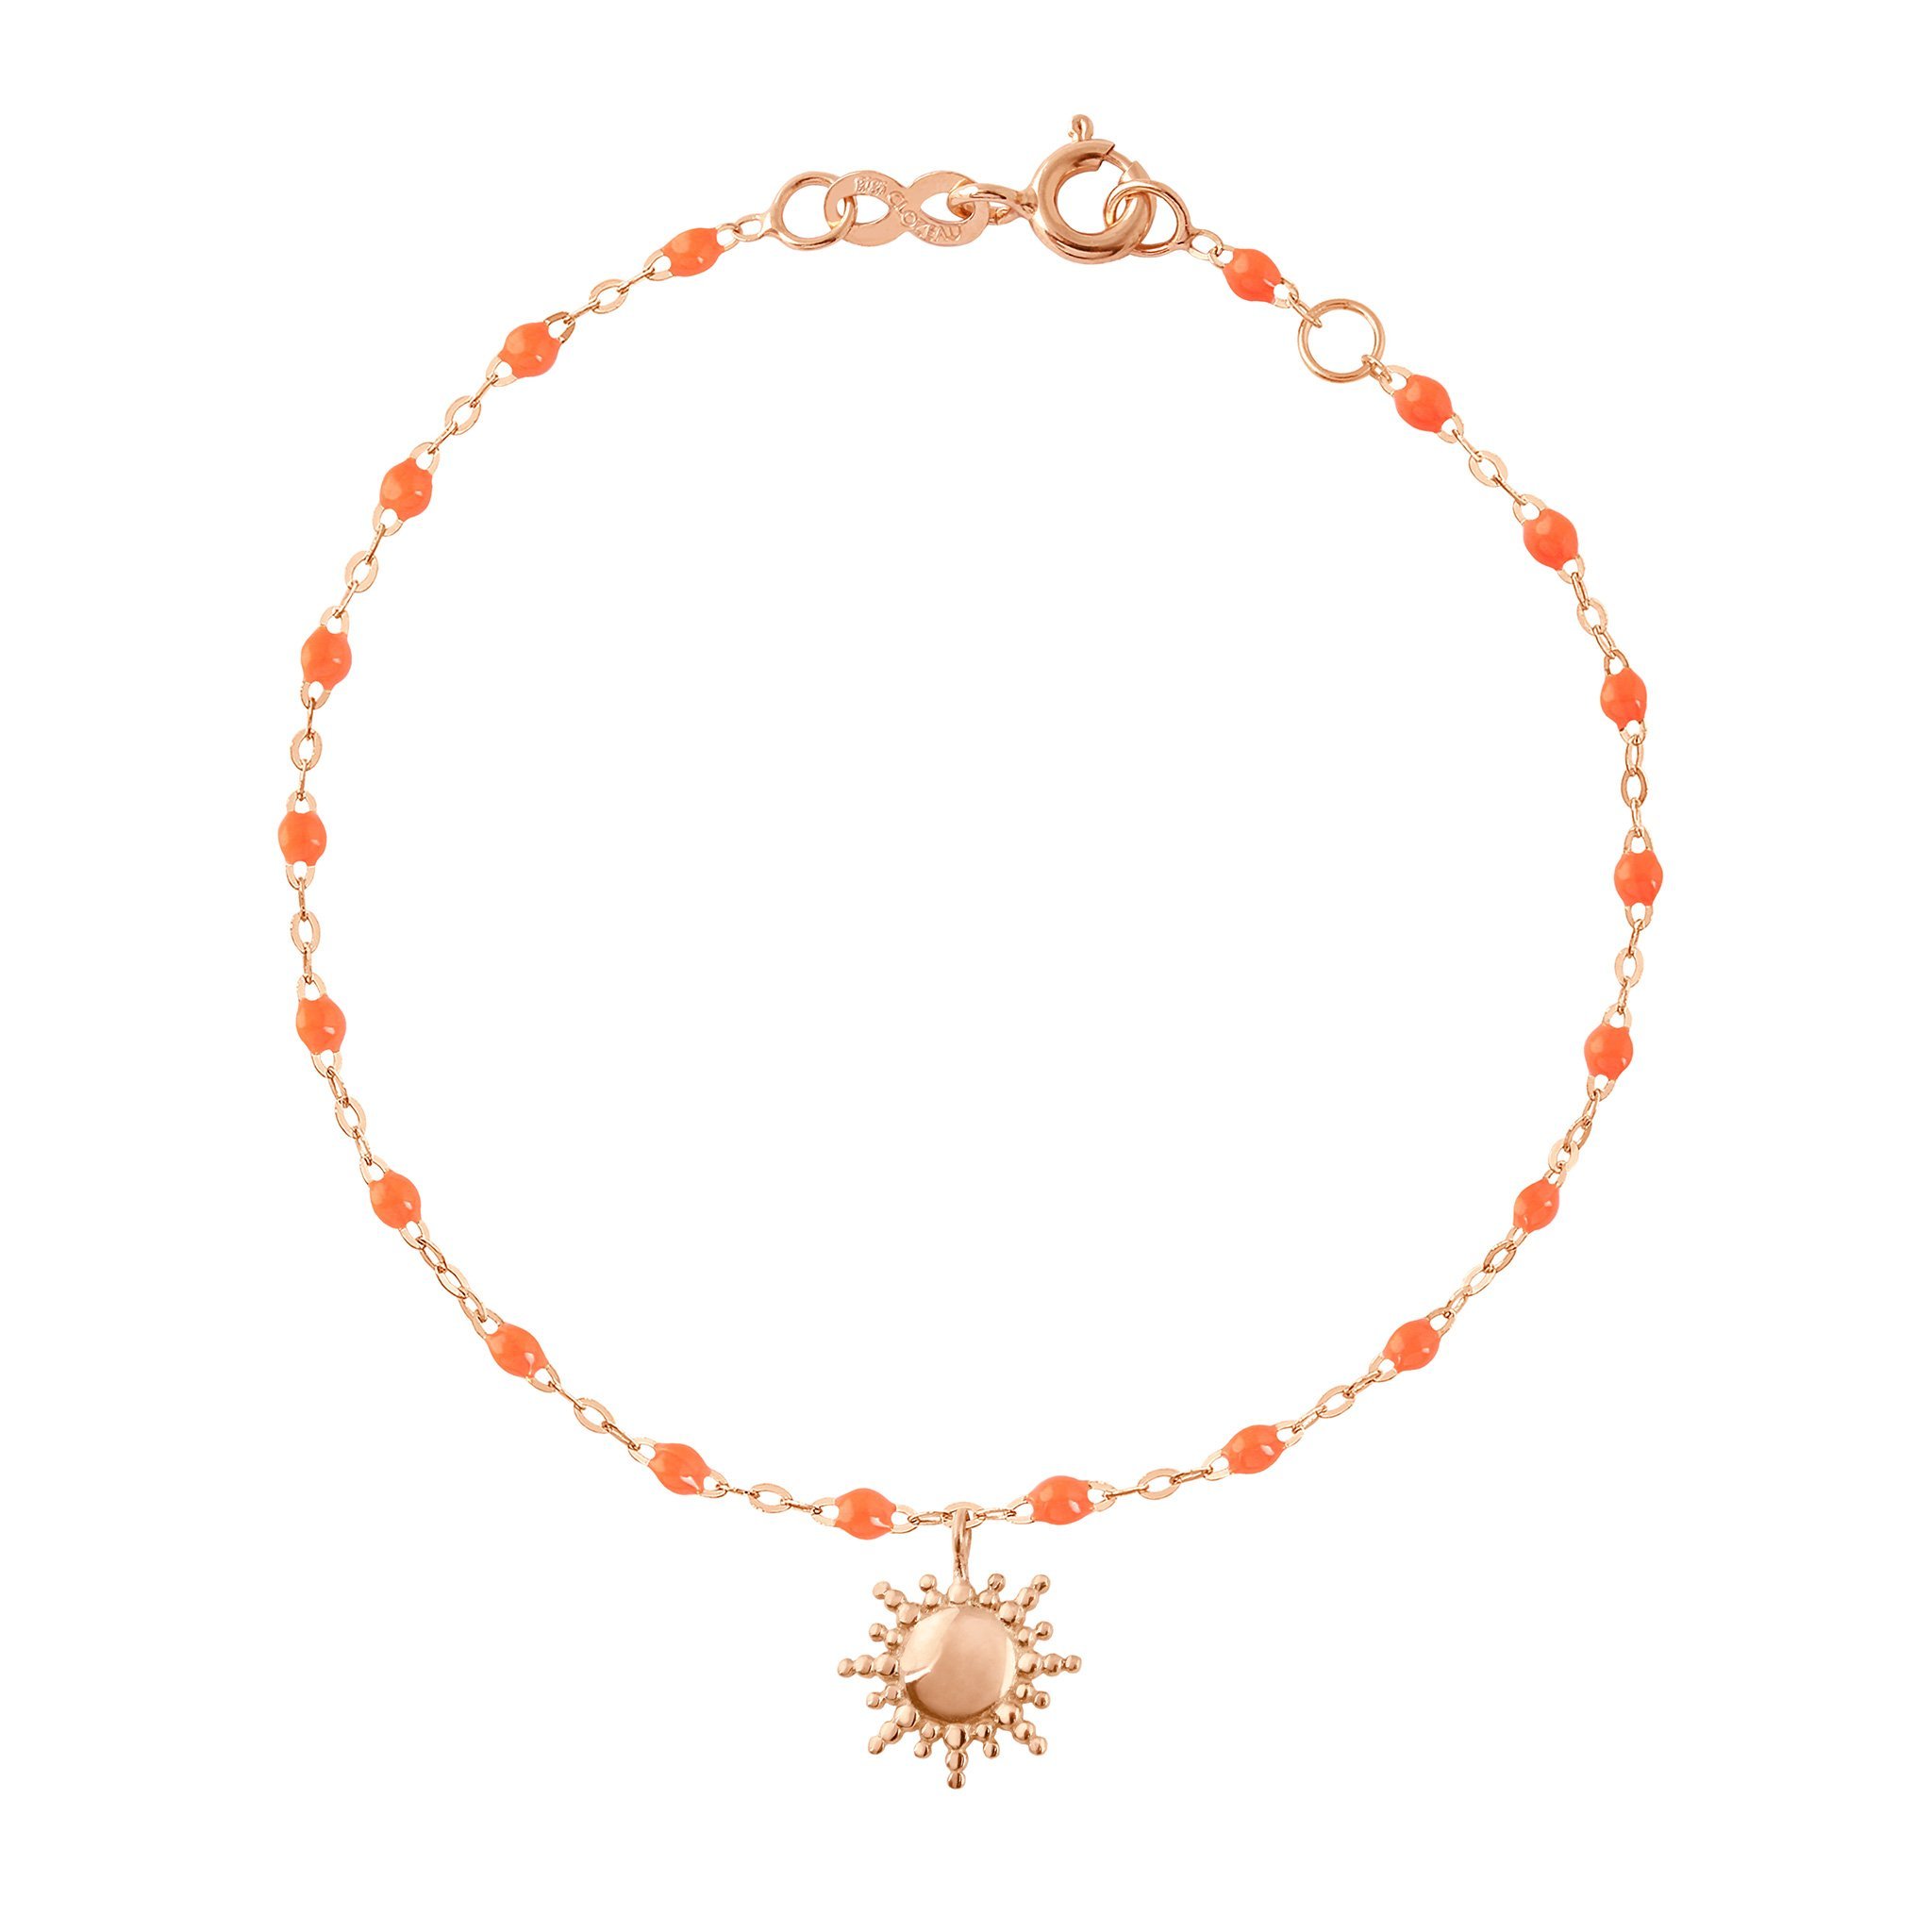 Bracelet orange fluo Soleil, or rose, 17 cm